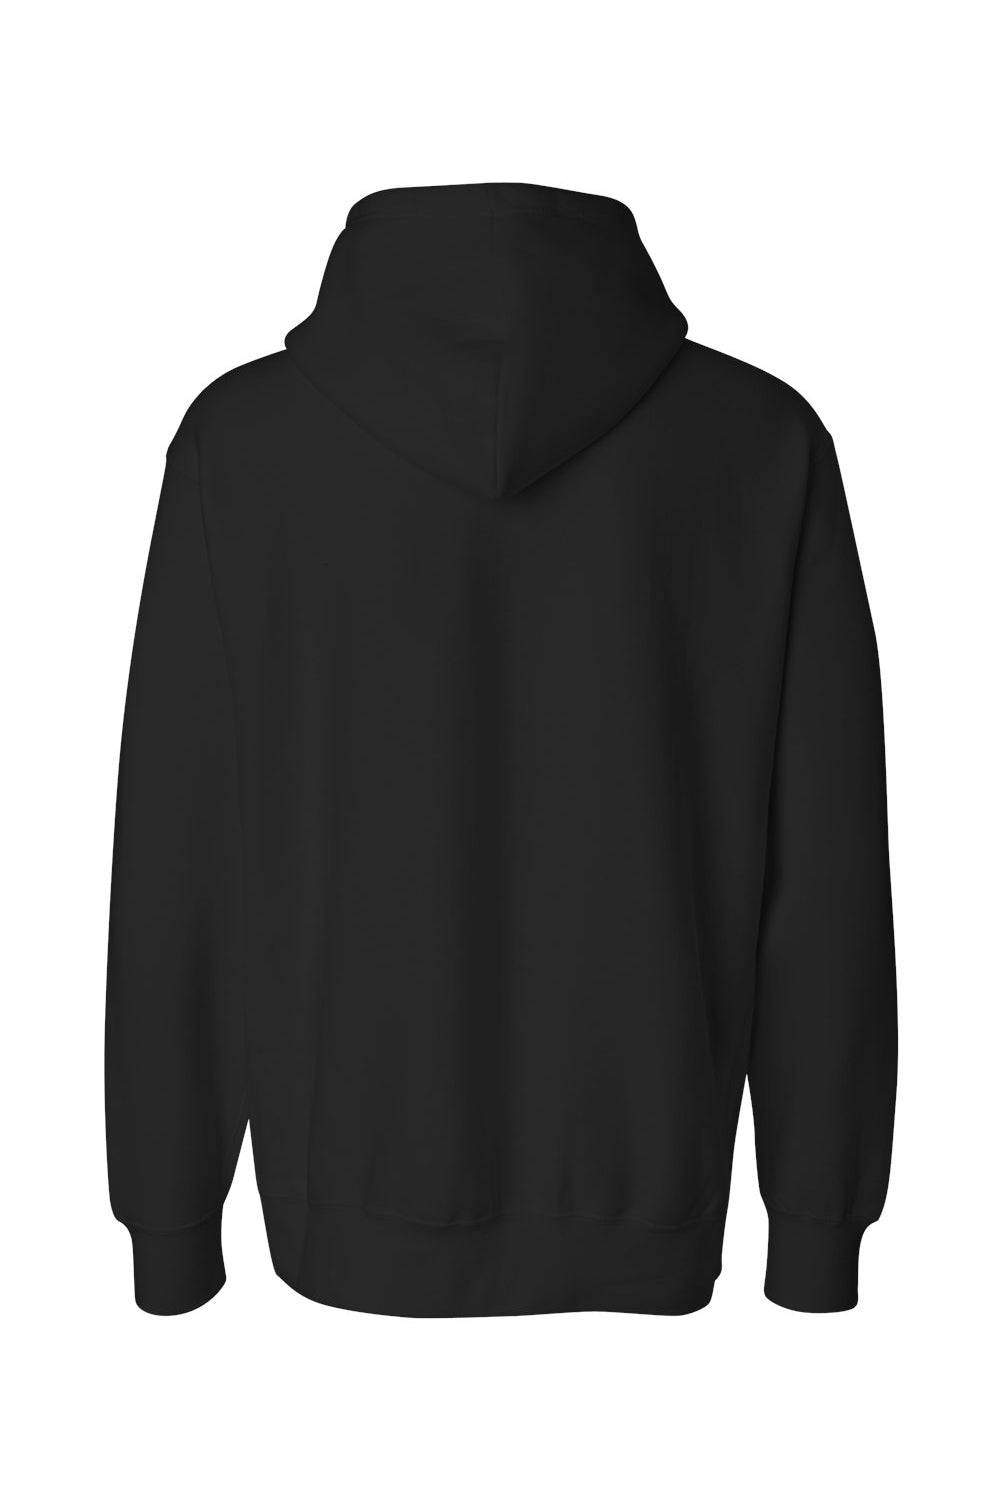 Weatherproof 7700 Mens Cross Weave Hooded Sweatshirt Hoodie Black Flat Back